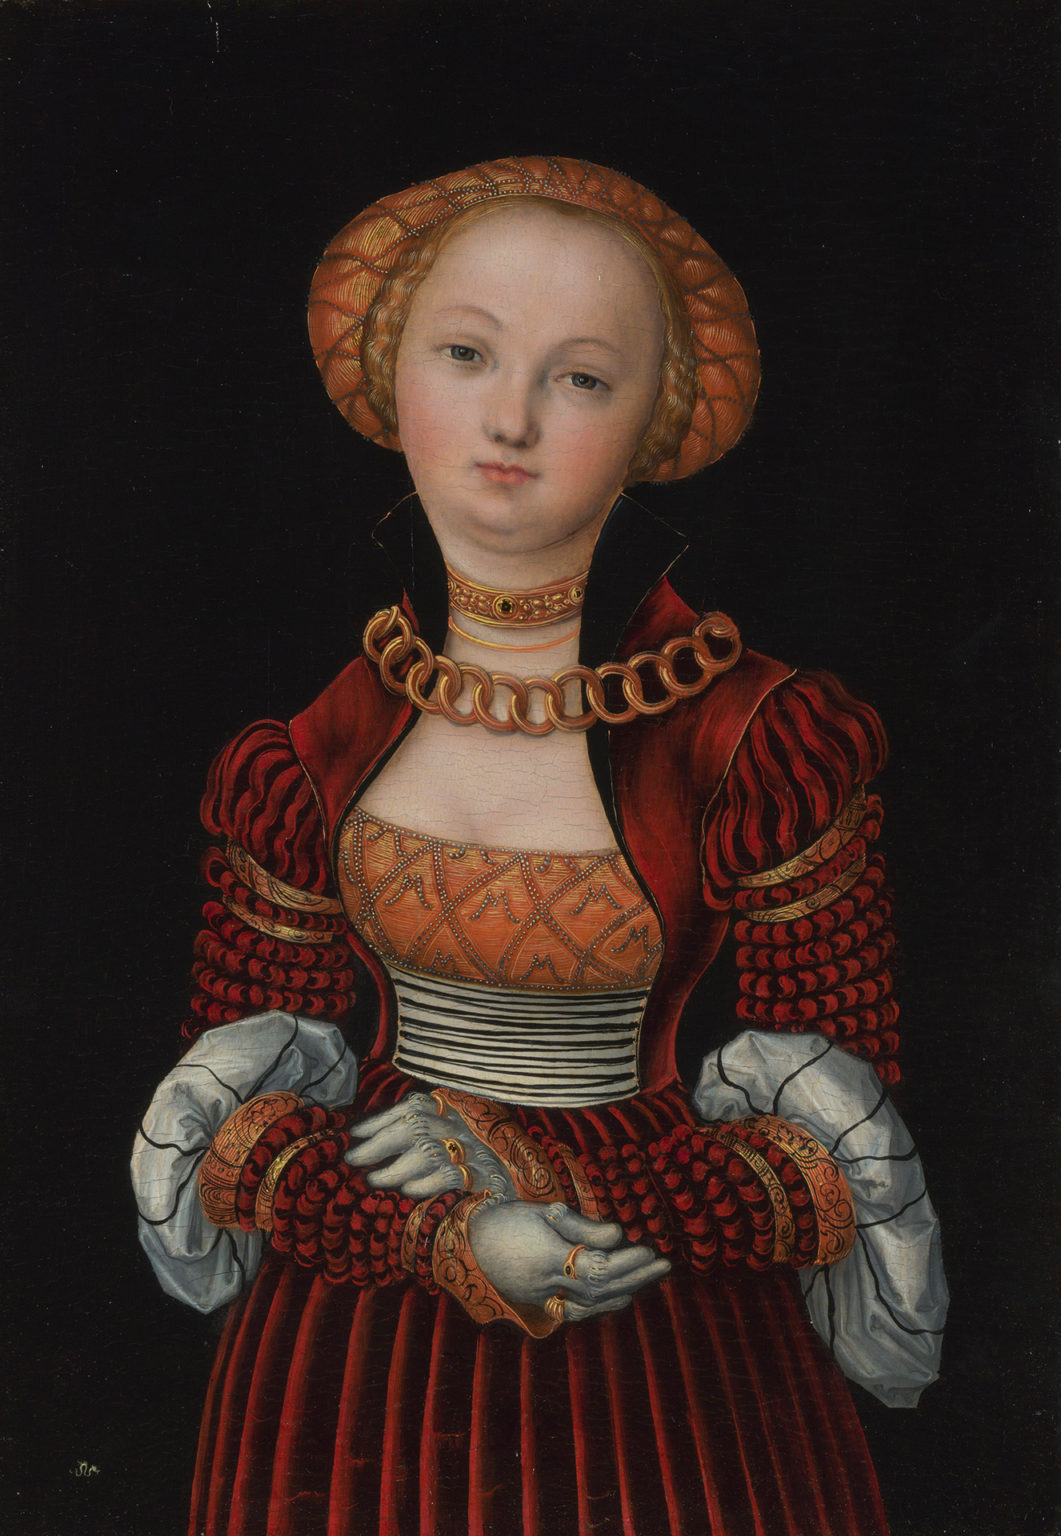 Portrait d'une femme peinte par Lucas Cranch l'Ancien. Elle est richement vêtue. Elle croise les bras.